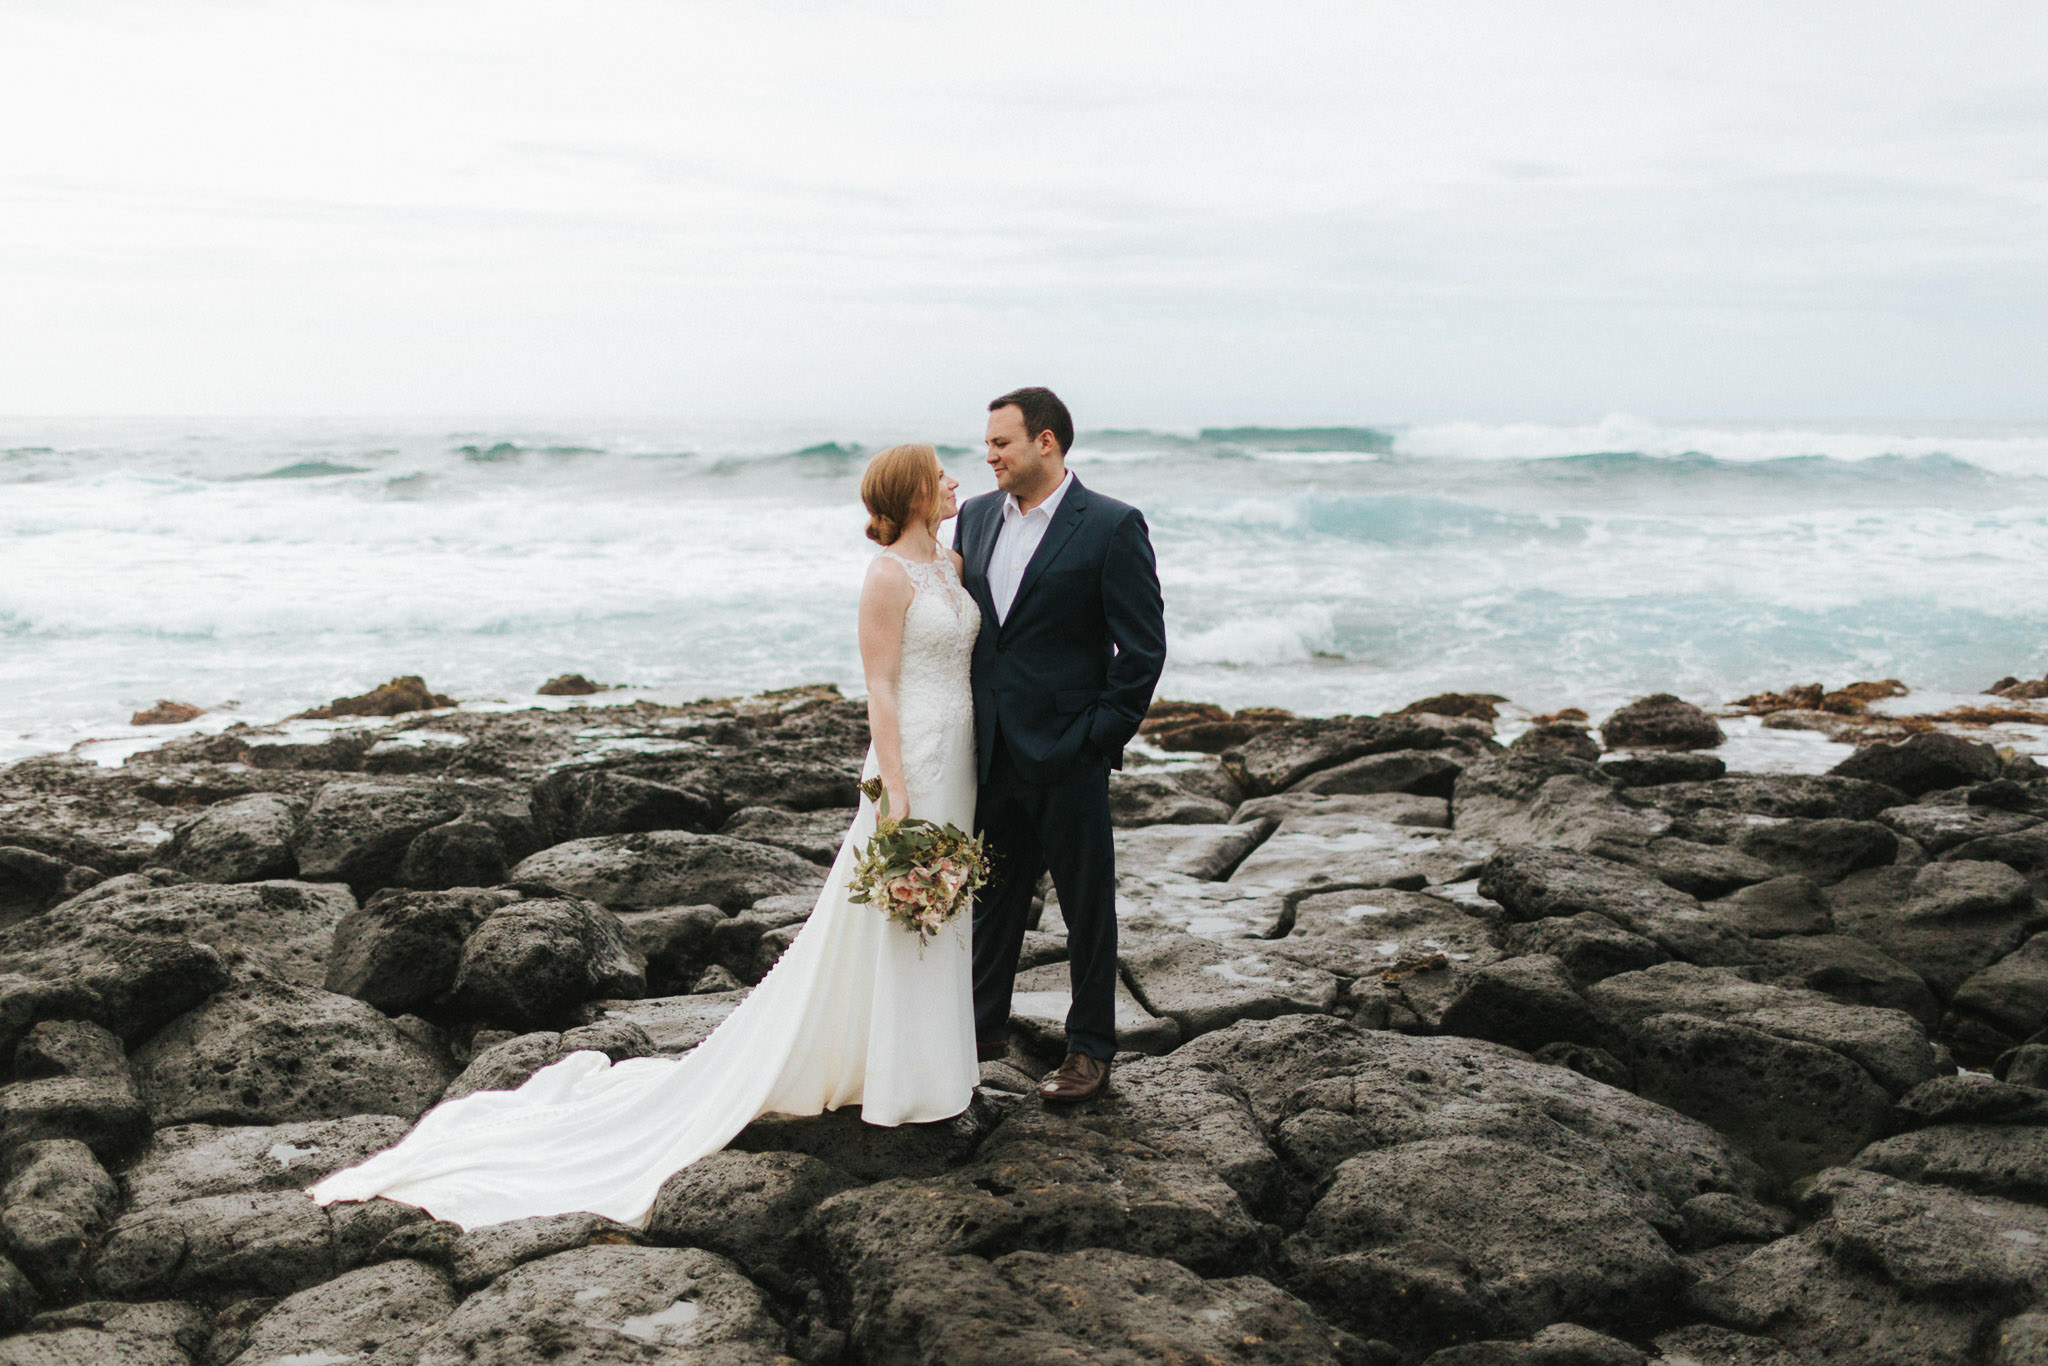 Bride and groom embrace on rocky shore on Kauai, Hawaii